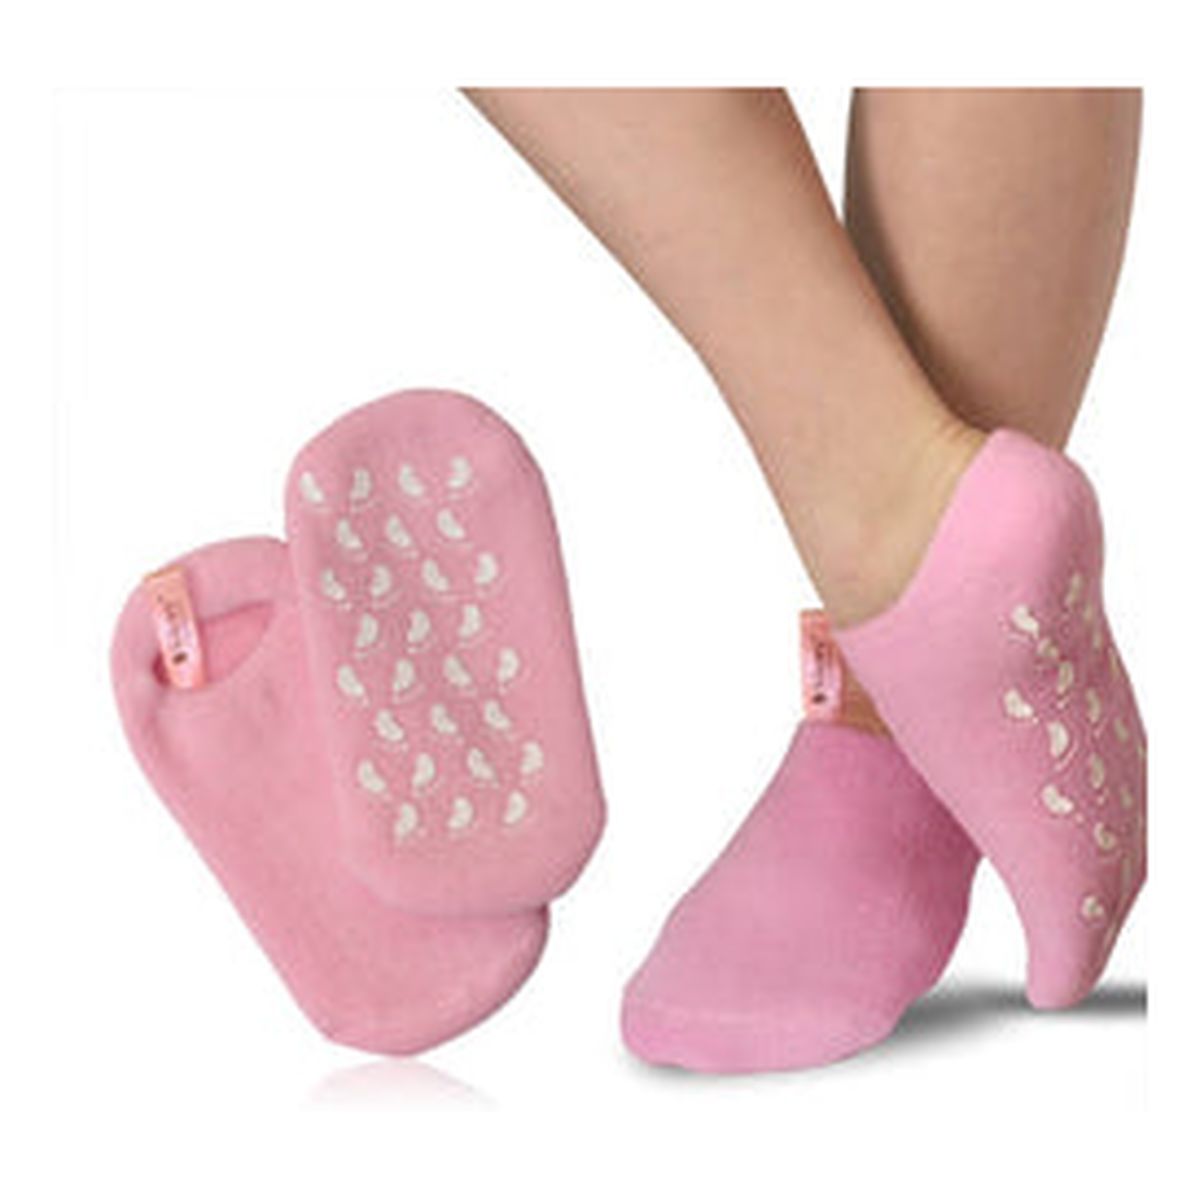 Silcare Moisturizing Socks skarpetki nawilżające bawełniane z wkładem żelowym 1 para